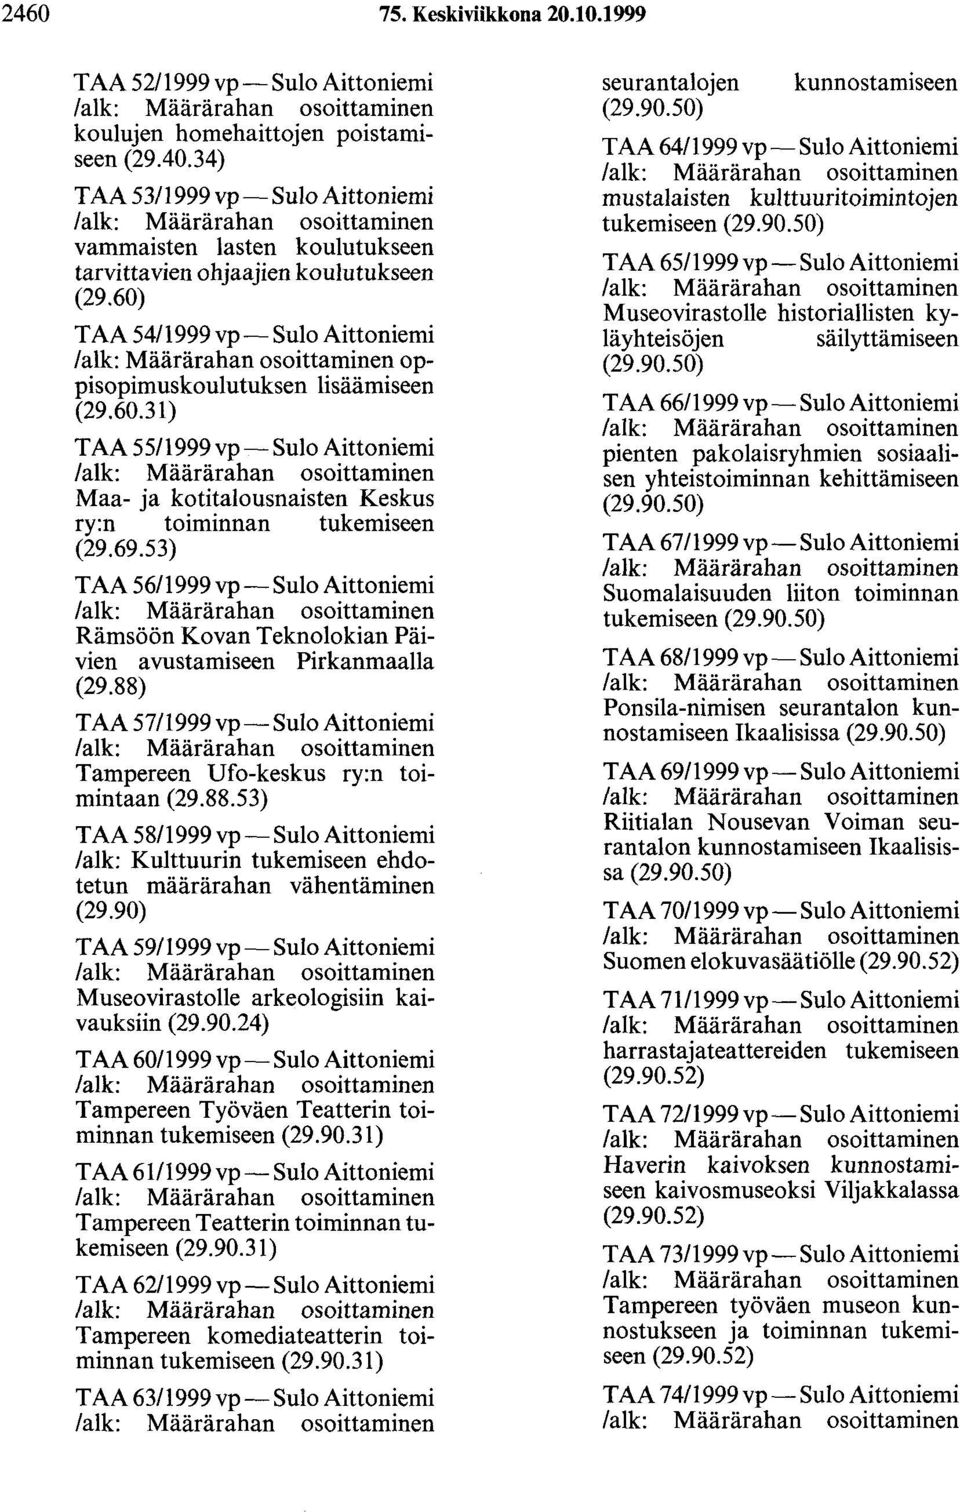 T AA 54/1999 vp-sulo Aittoniemi oppisopimuskoulutuksen lisäämiseen (29.60.31) T AA 5 511999 vp-sulo Aittoniemi Maa- ja kotitalousnaisten Keskus ry:n toiminnan tukemiseen (29.69.